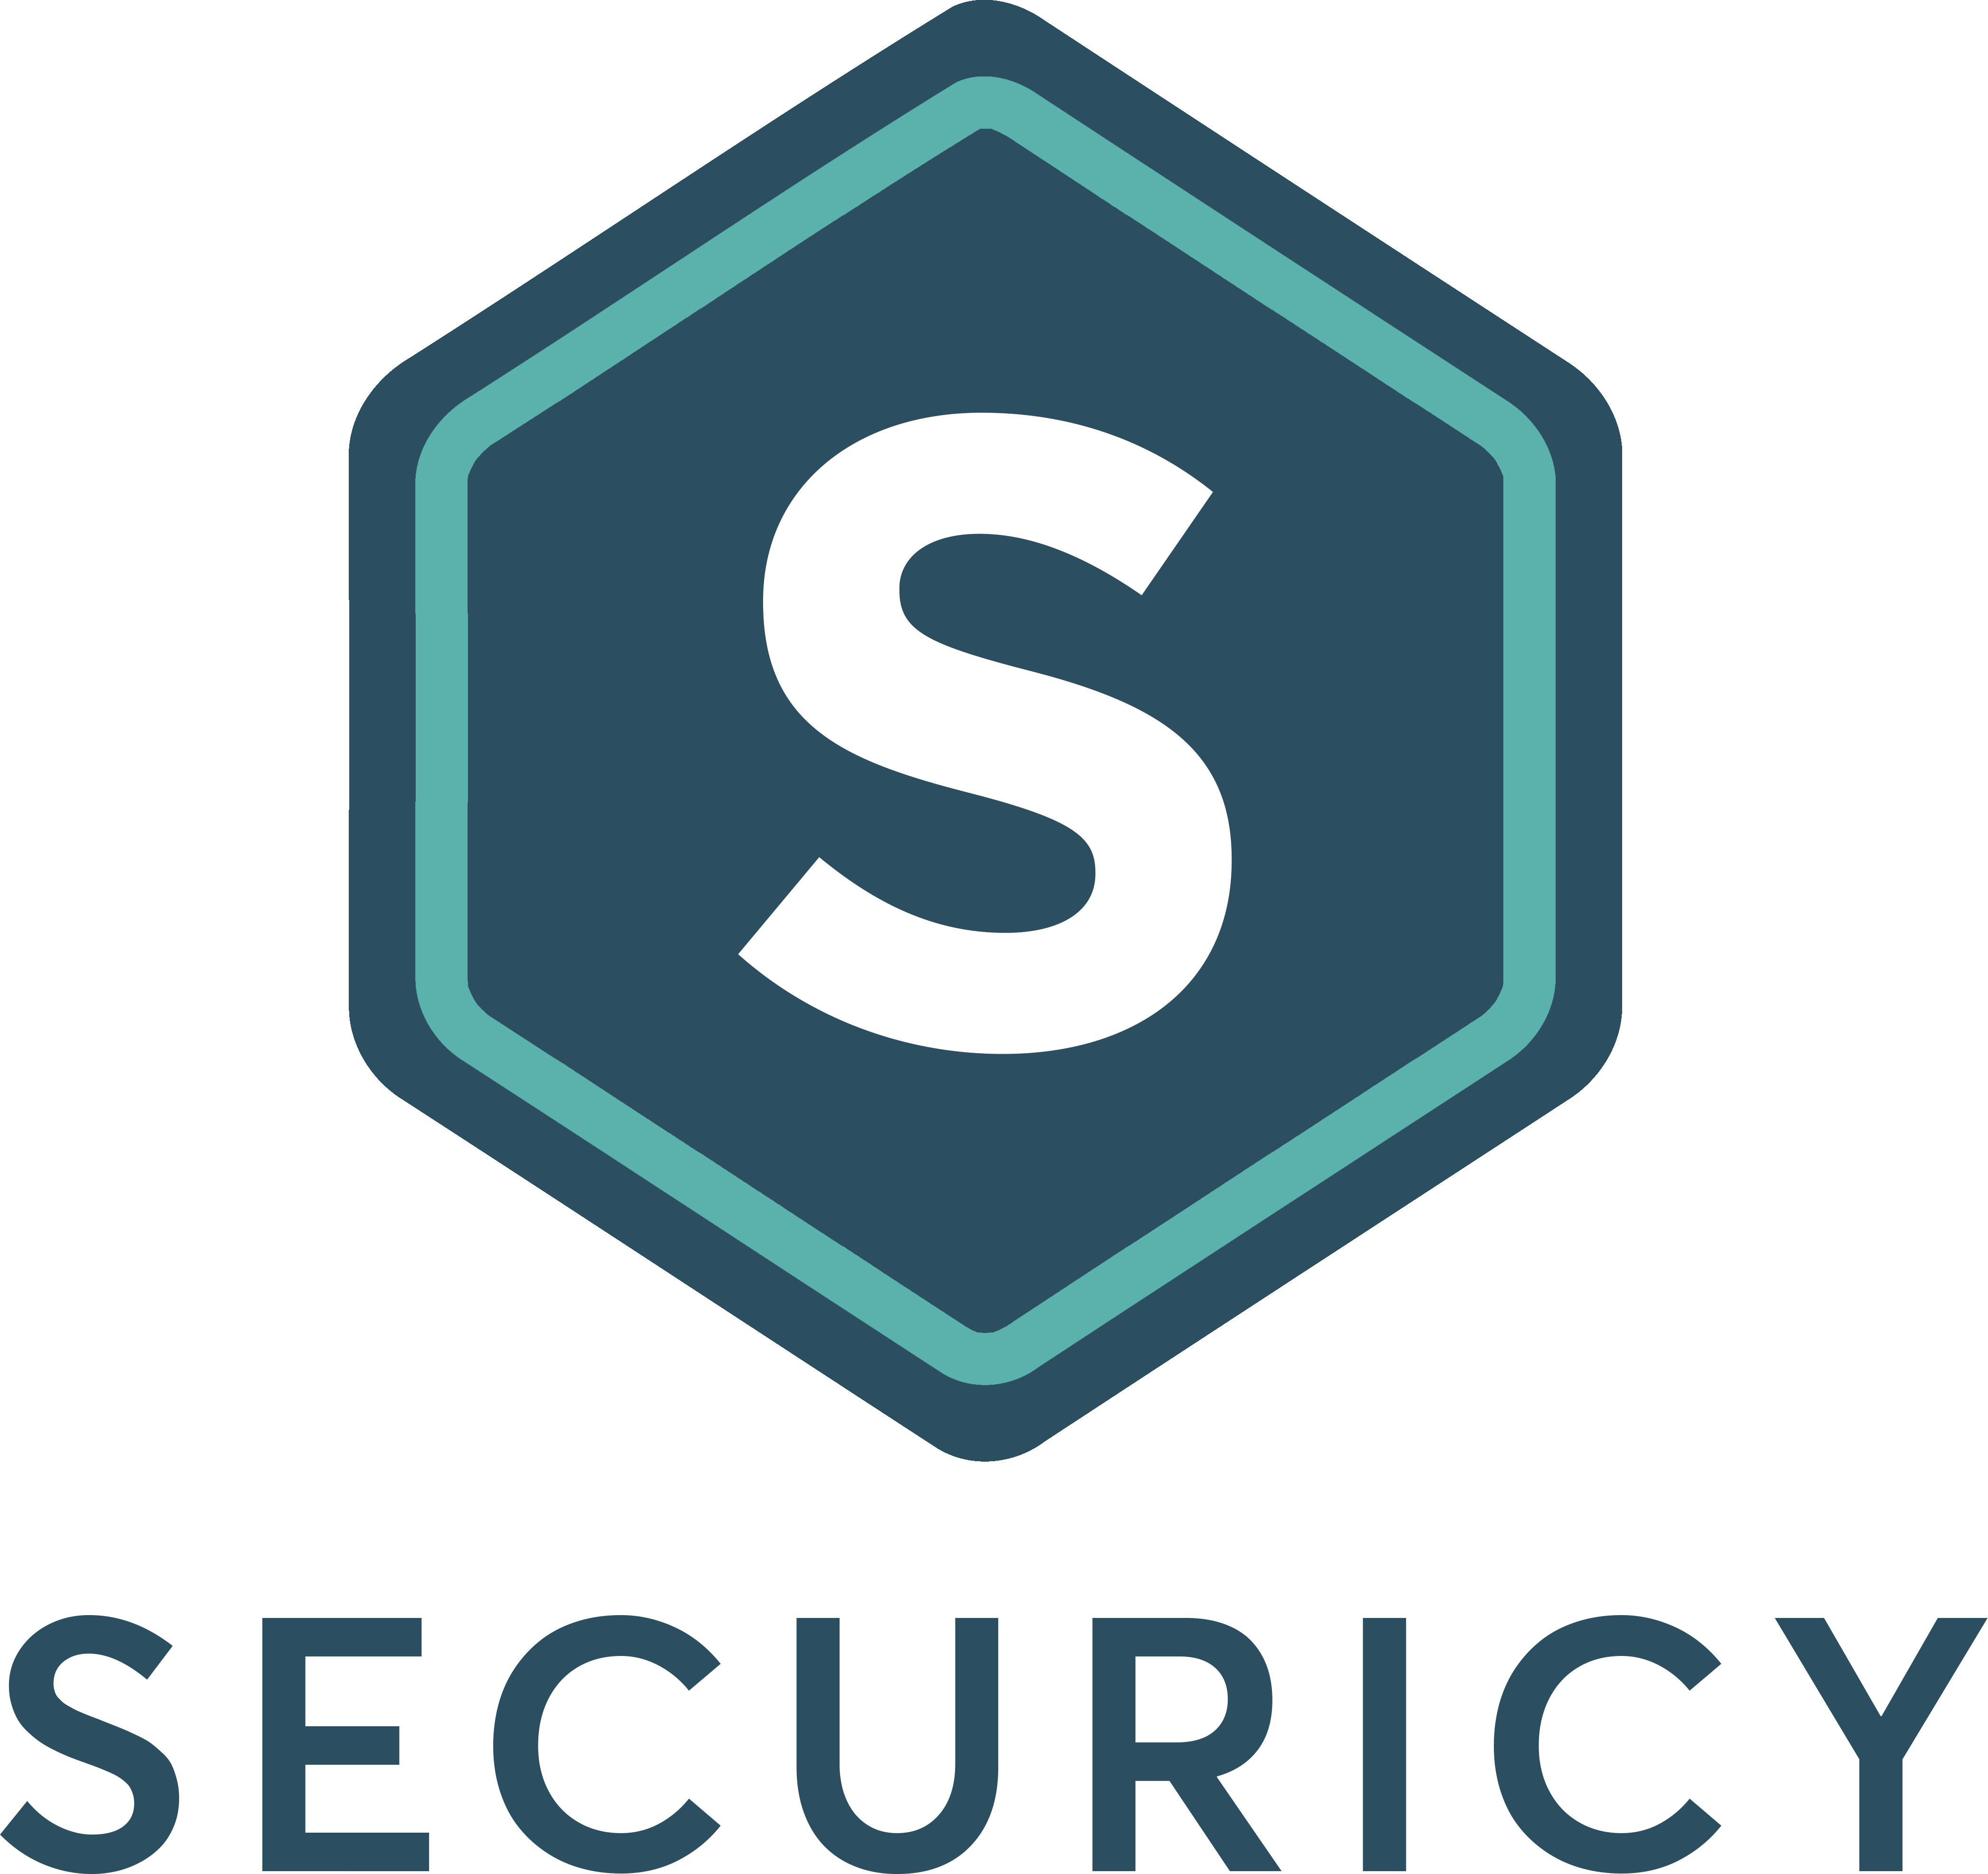 Securicy Logo